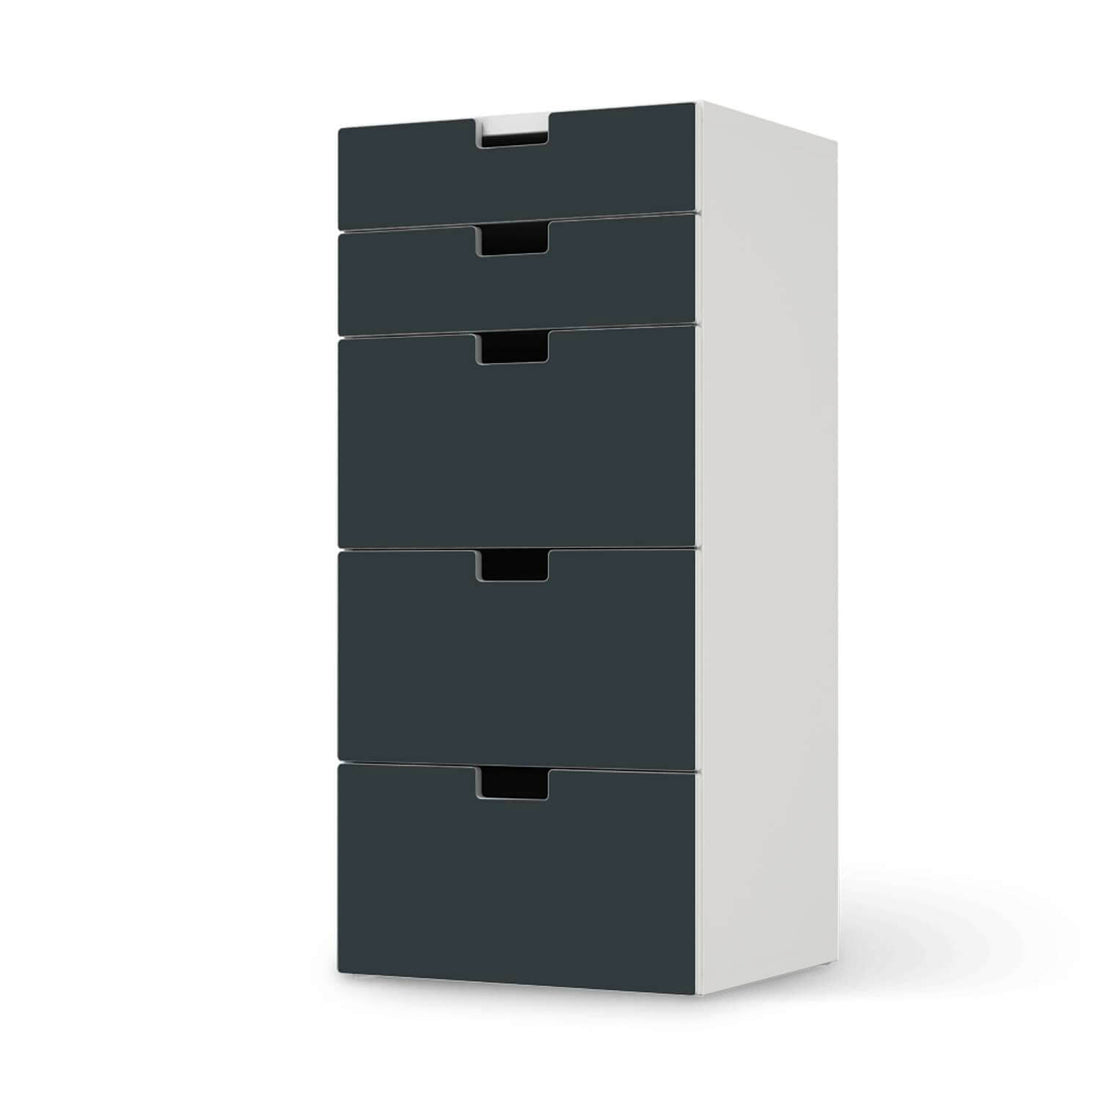 Möbel Klebefolie Blaugrau Dark - IKEA Stuva Kommode - 5 Schubladen  - weiss